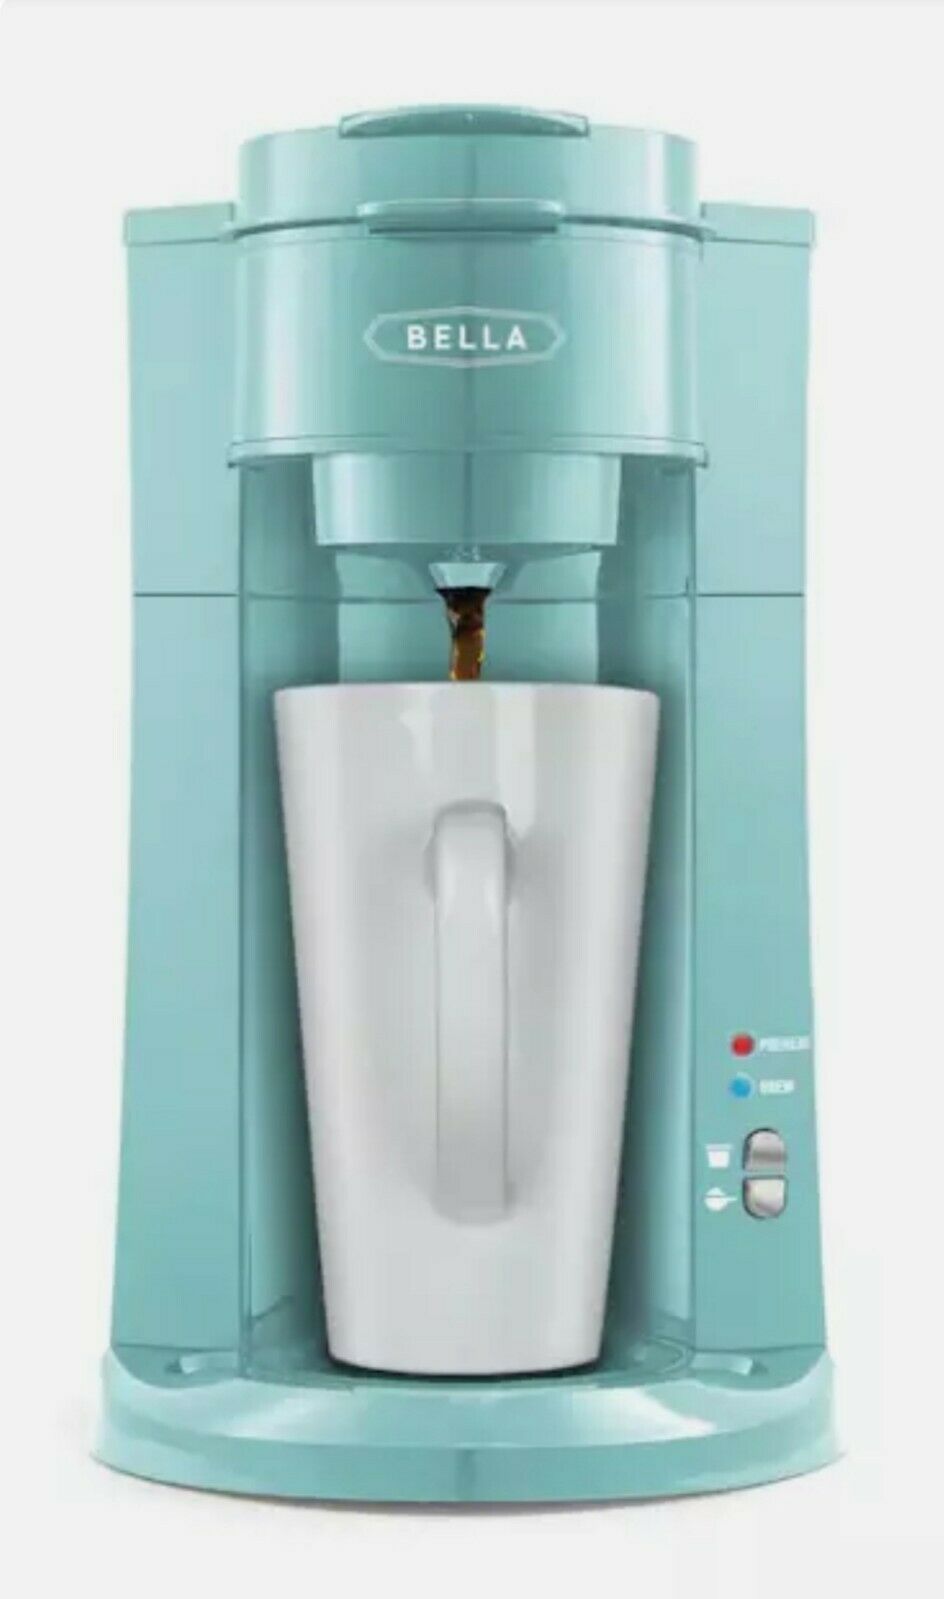 Bella Dual Brew Single-serve Coffee Maker - Aqua Color K-cup Compatible